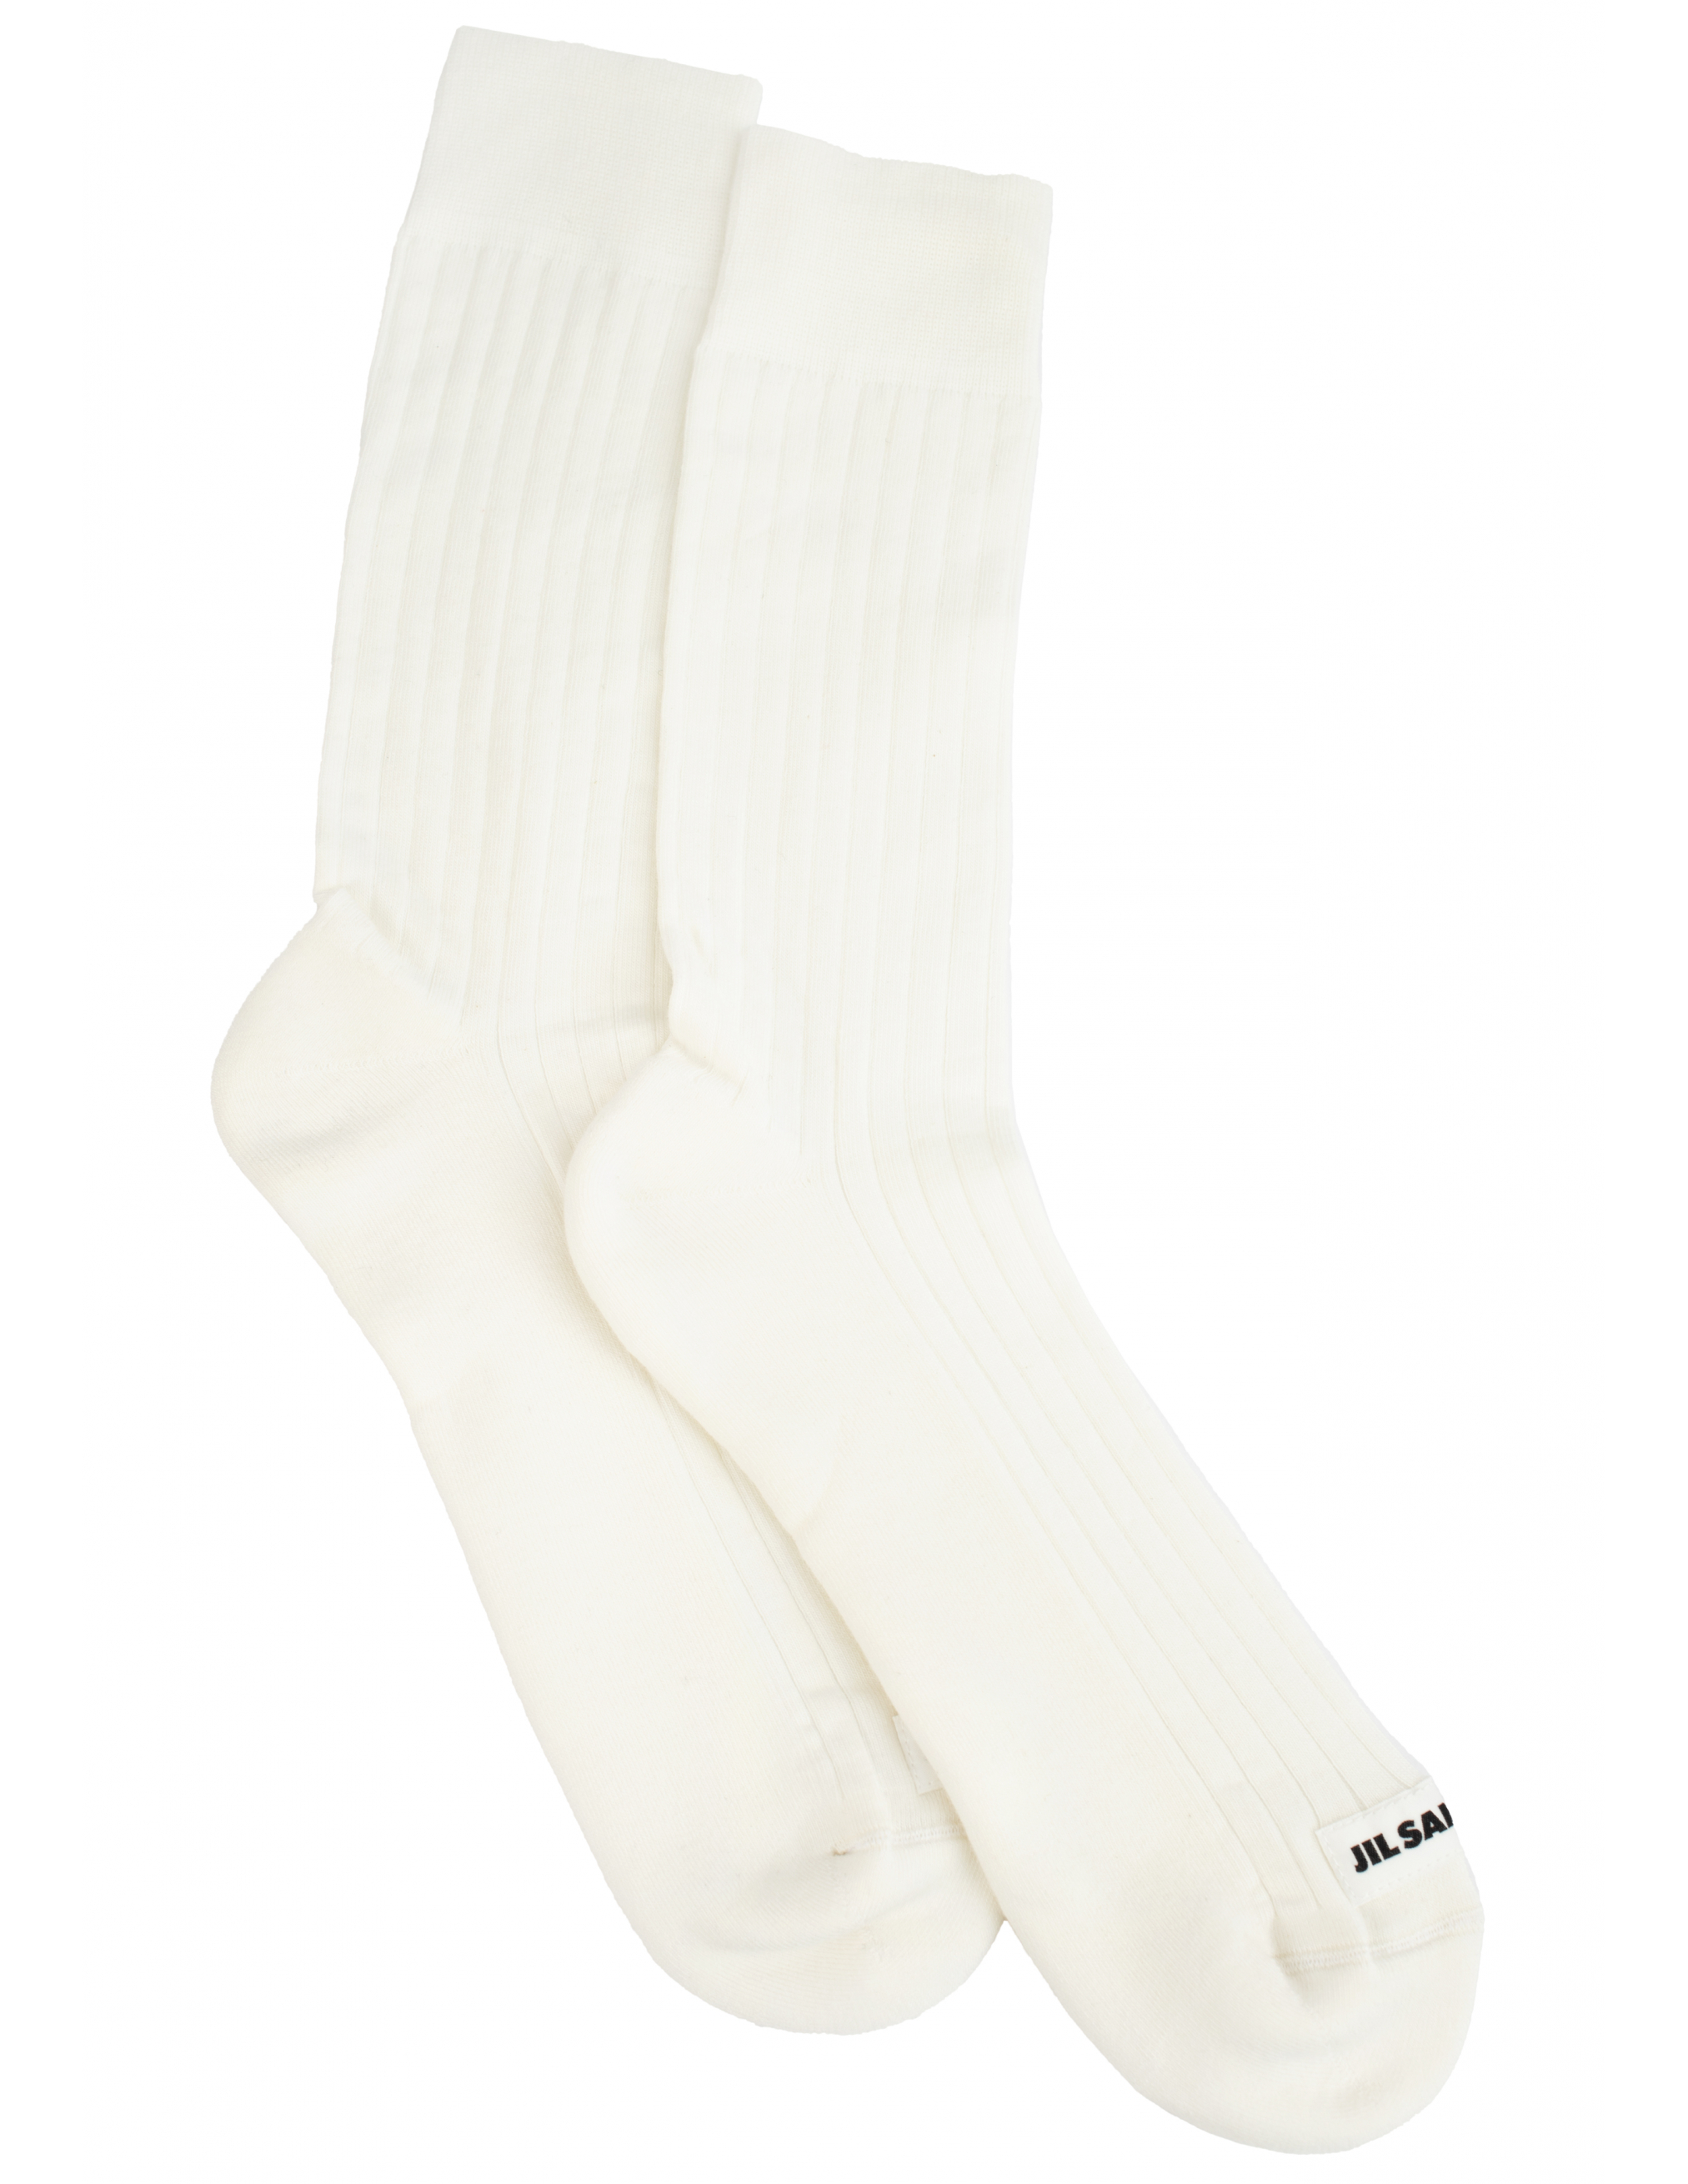 Белые носки в рубчик Jil Sander JPUT766020/MTY25158/100, размер L;S;M JPUT766020/MTY25158/100 - фото 1